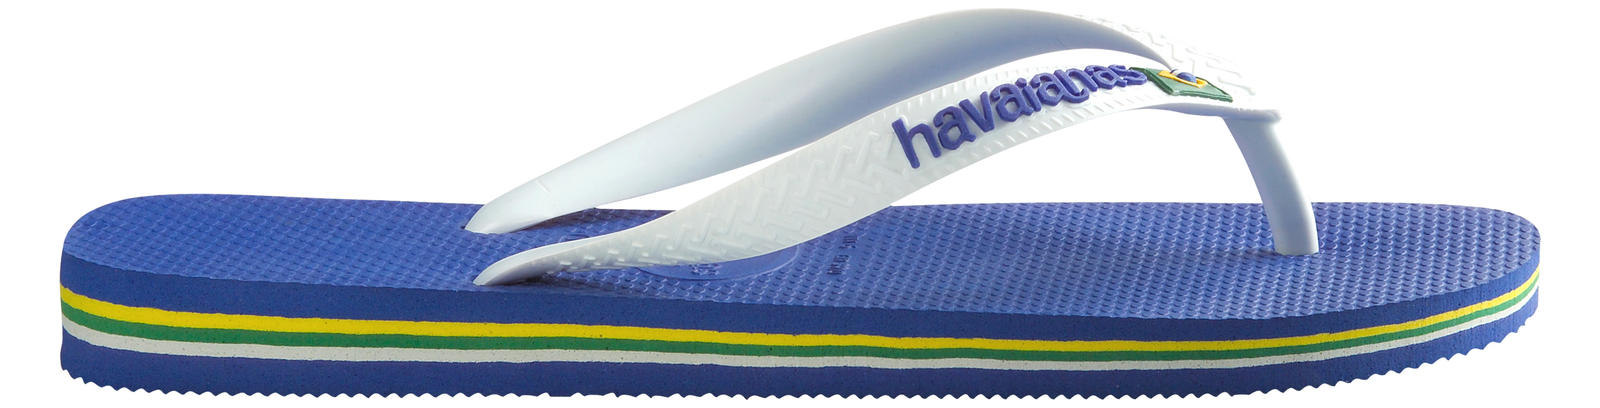 Havaianas Brasil Logo Strandpapucs BR-41/42 = 27-28 cm, Kék fotója